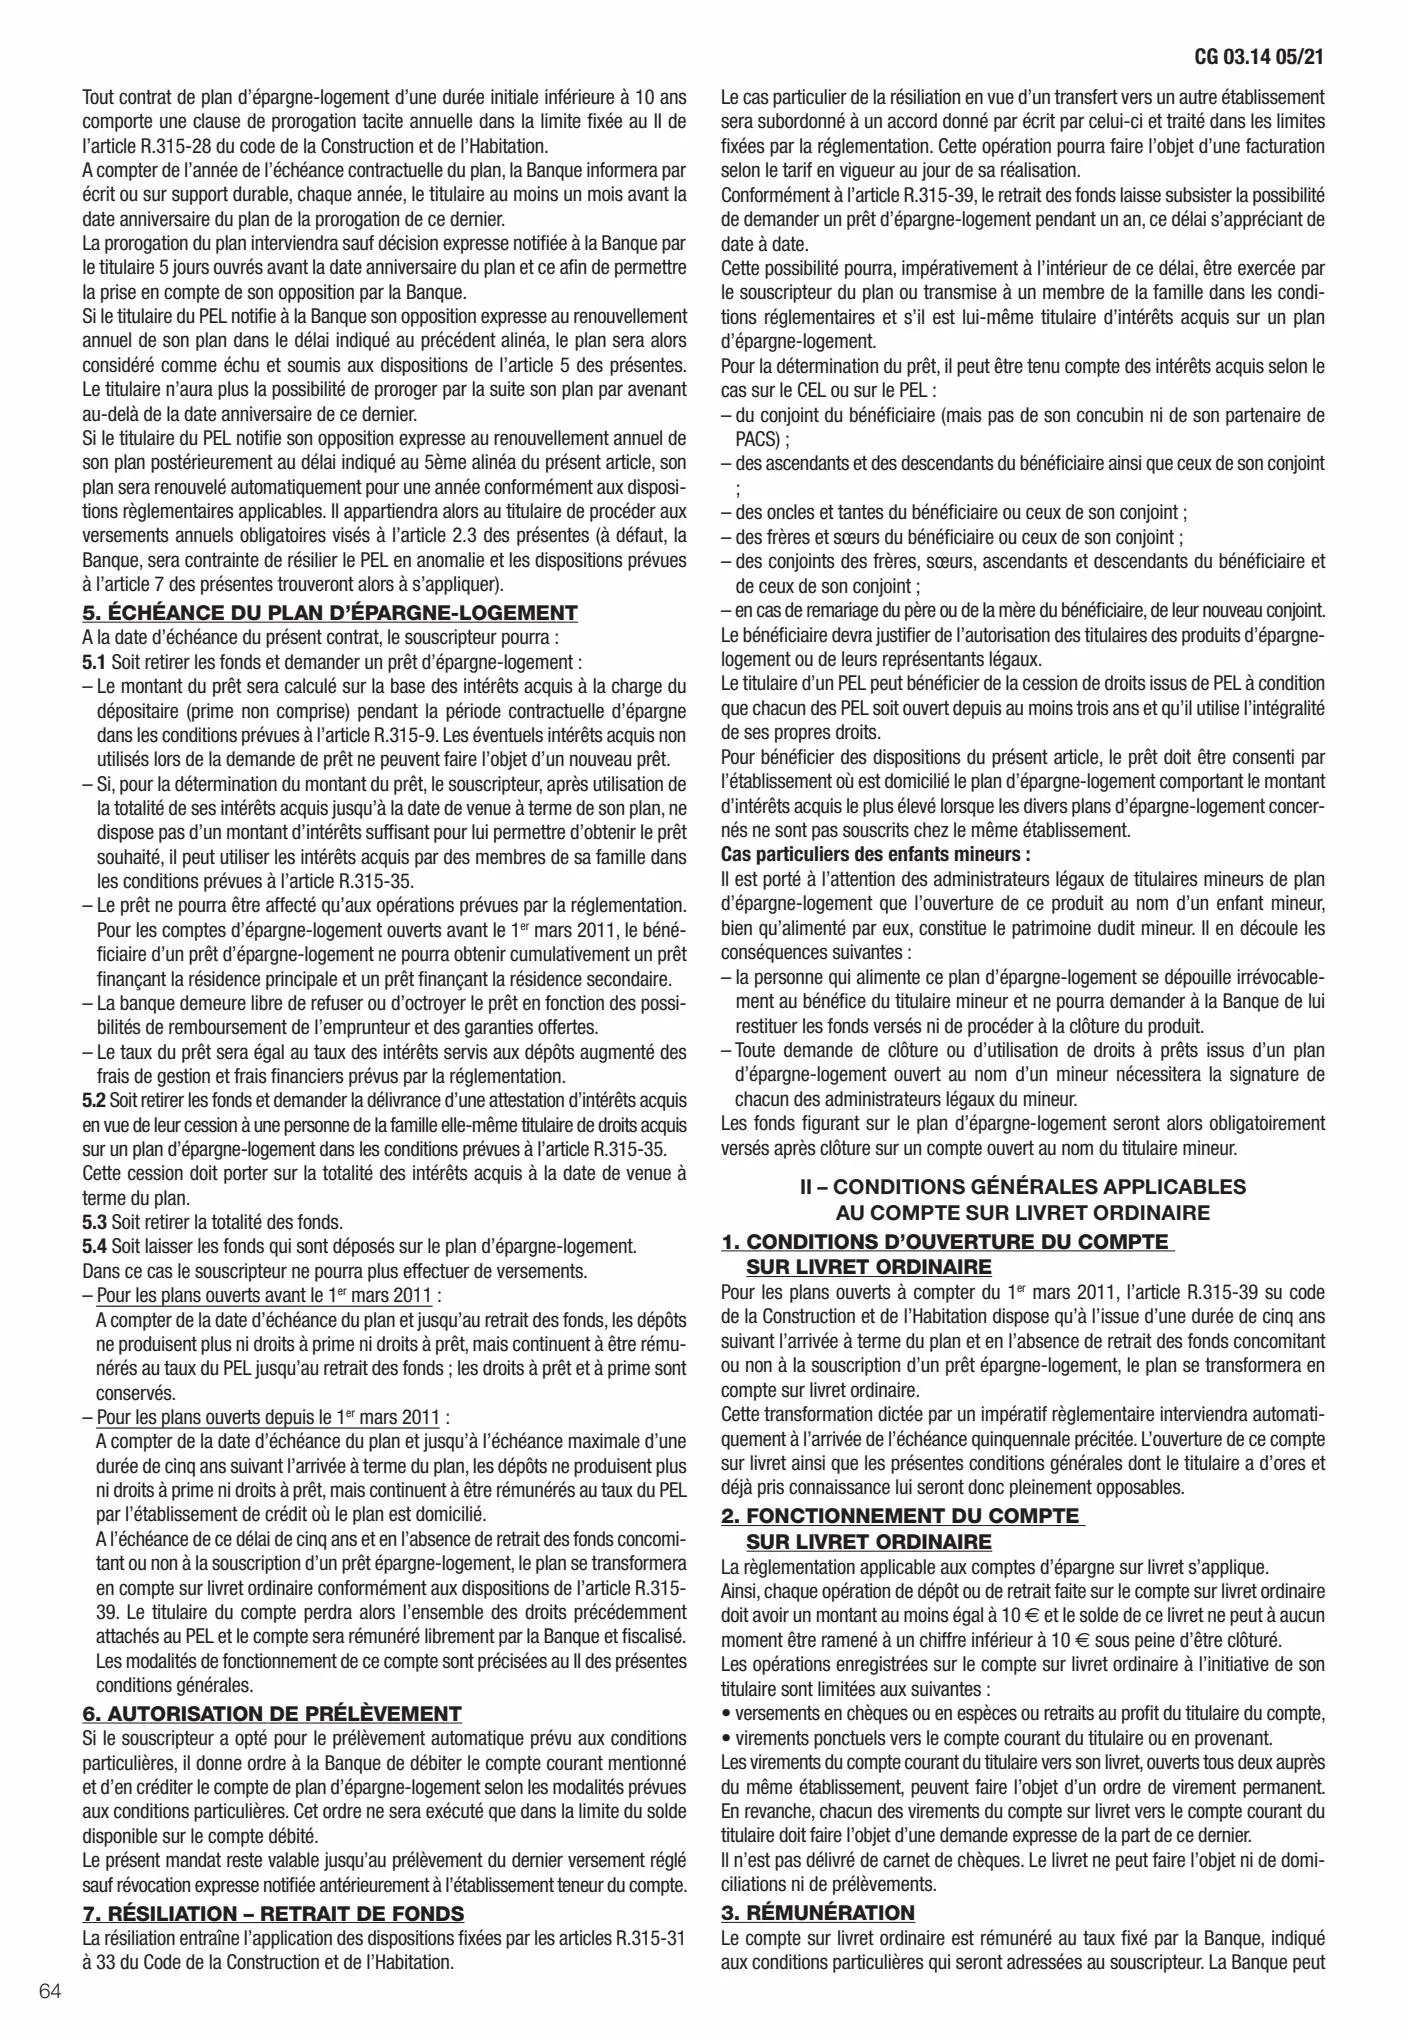 Catalogue Conditions générales Particuliers, page 00066